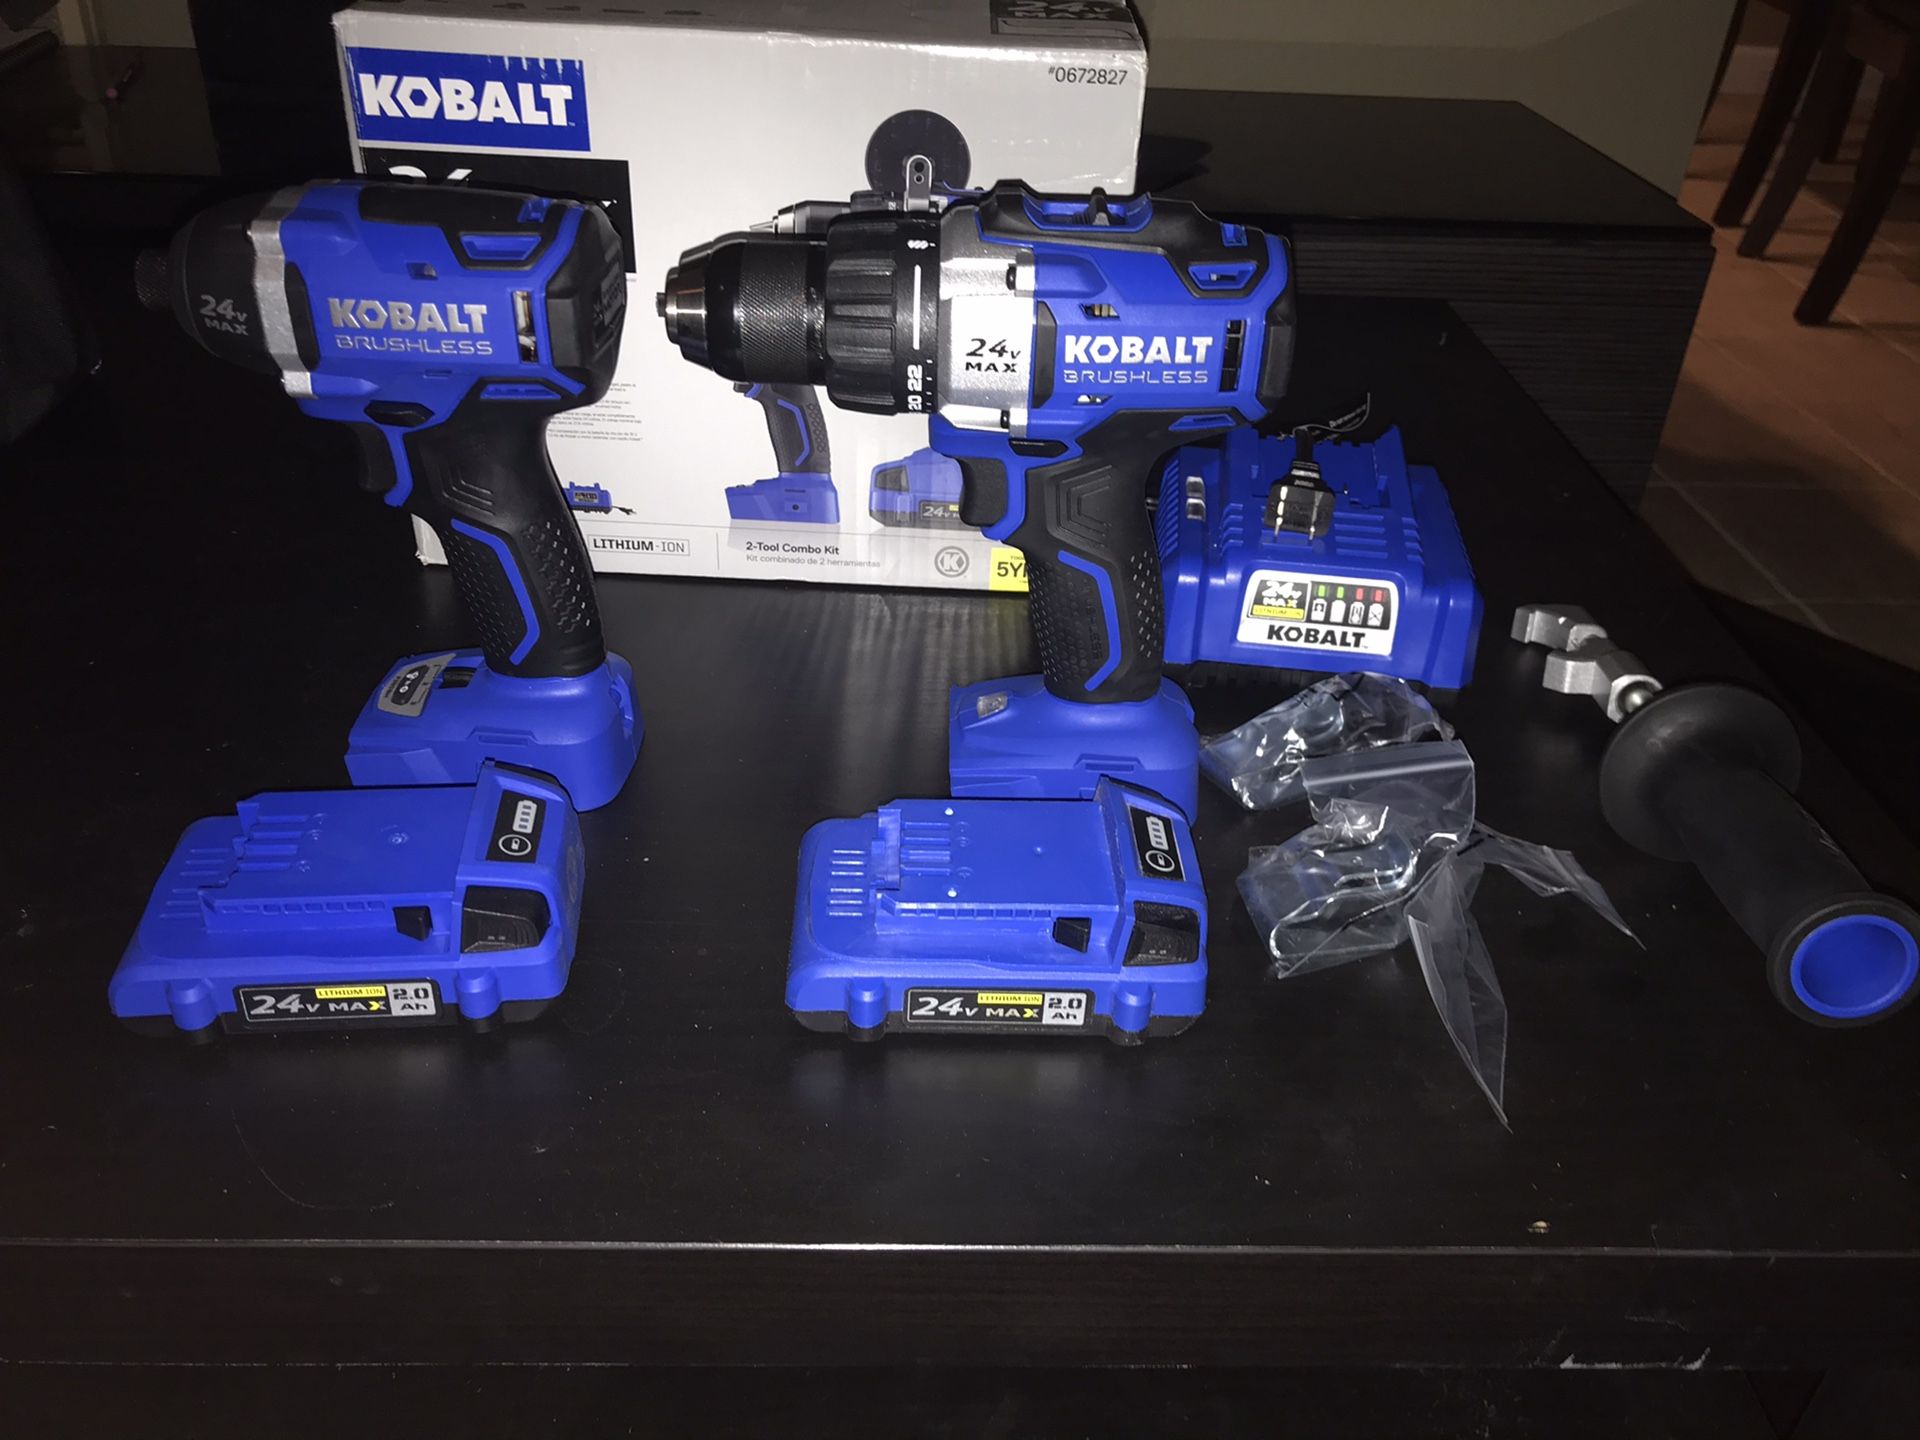 Kobalt 24v power tools includes 2 batteries